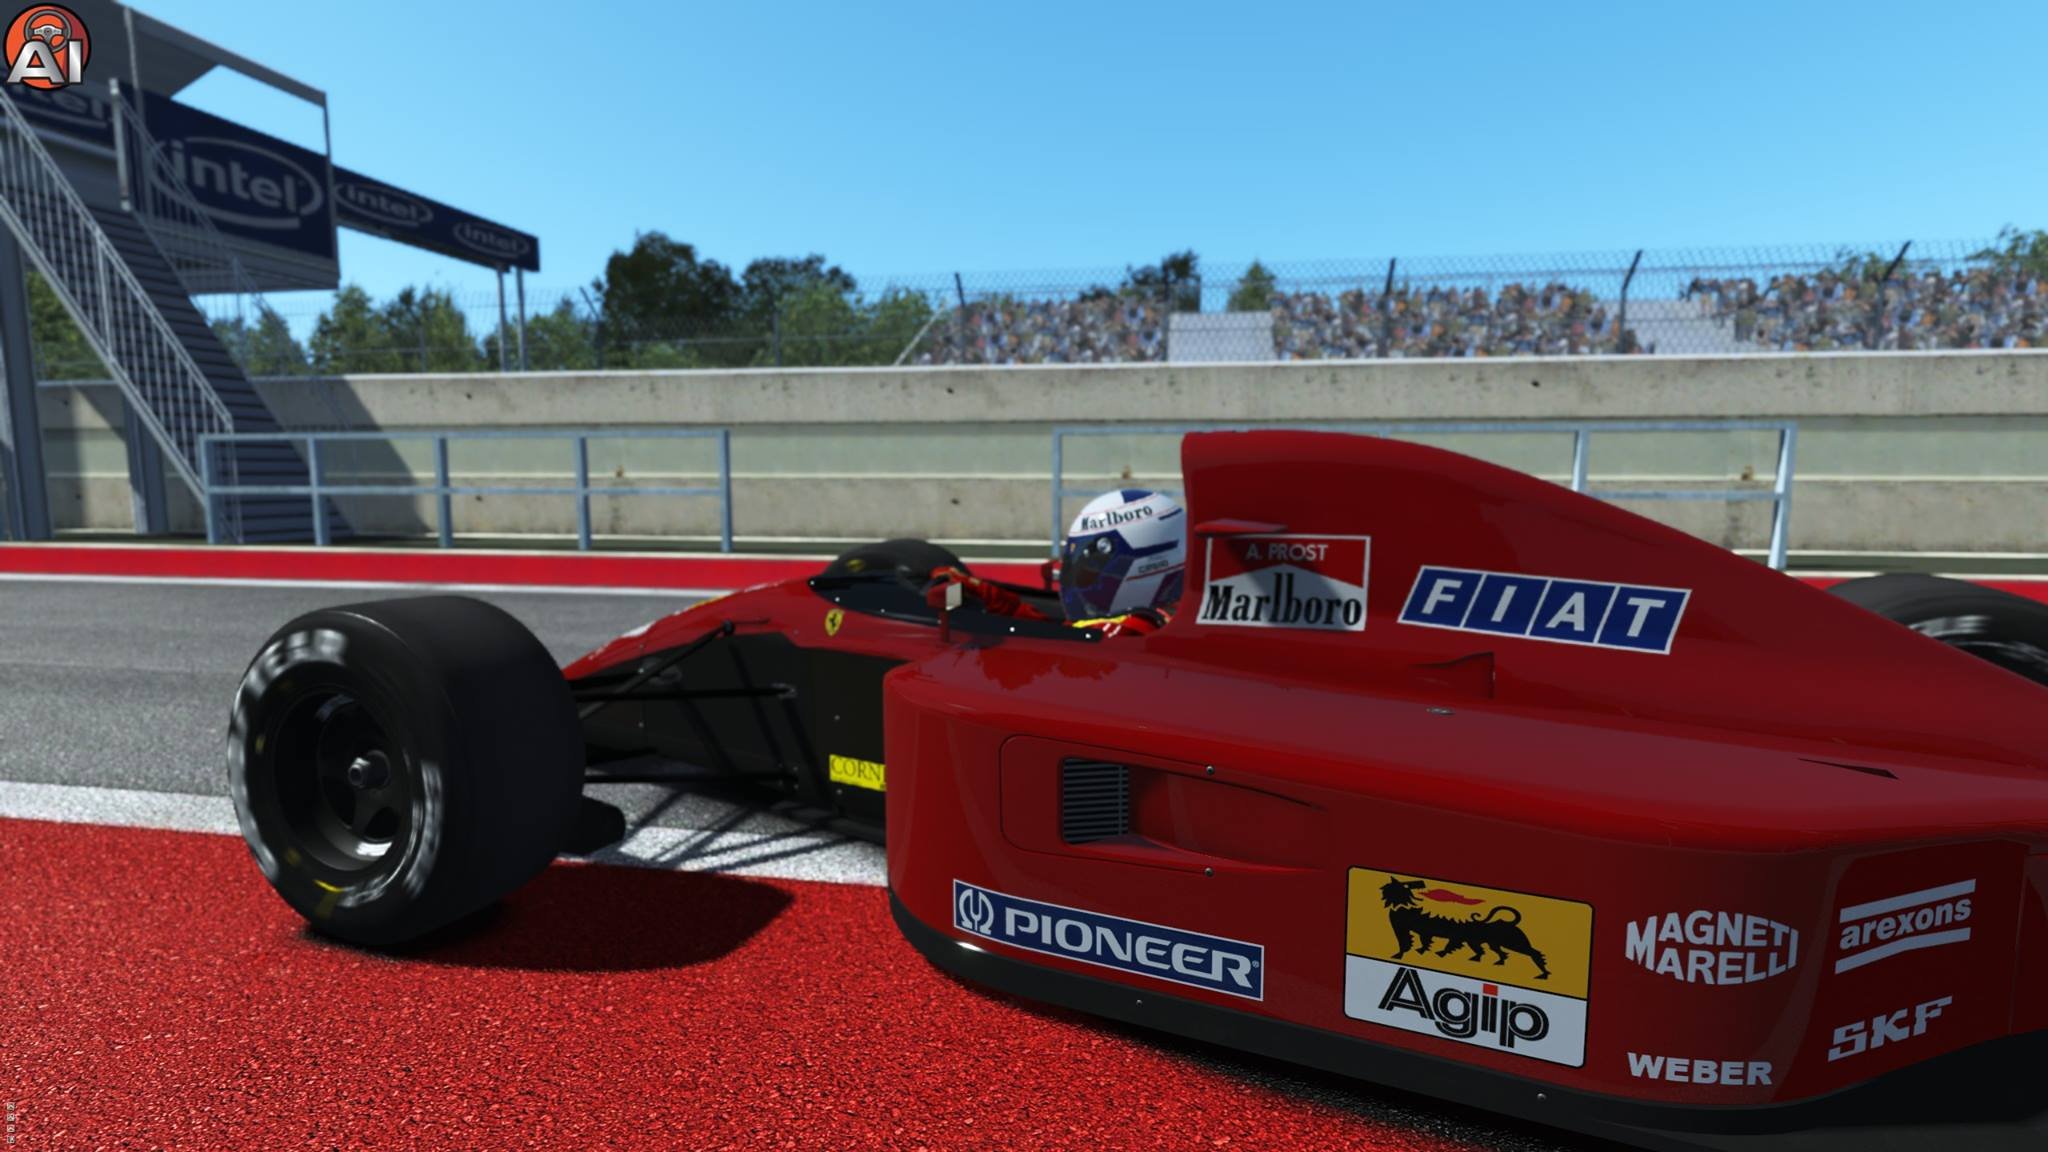 More information about "rFactor 2: Ferrari 643 v1.91 by ASR Formula"